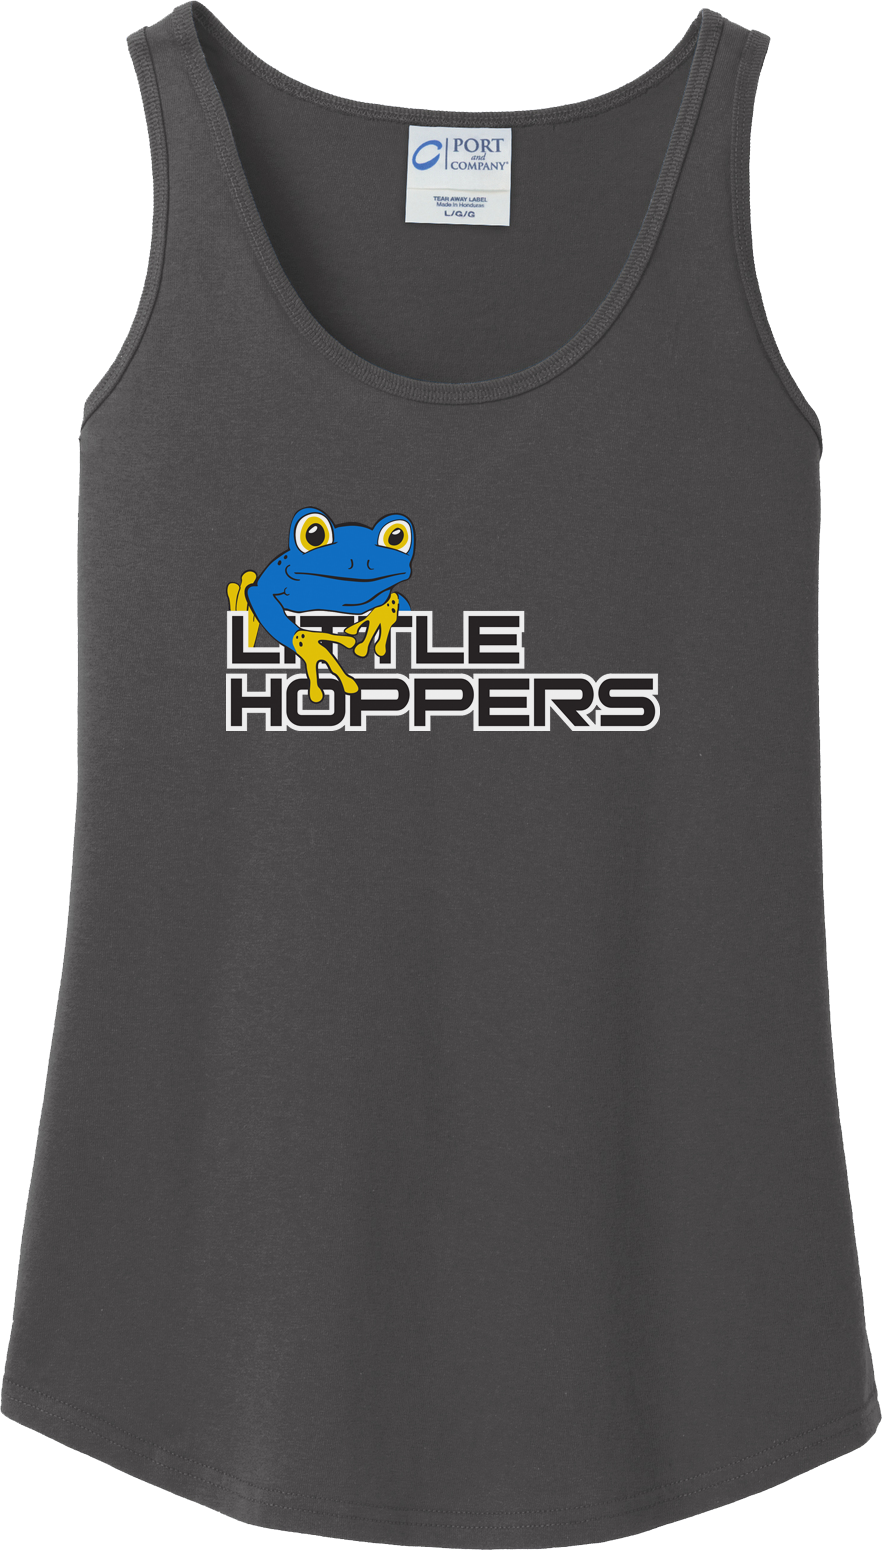 Little Hoppers Lacrosse Women's Charcoal Tank Top